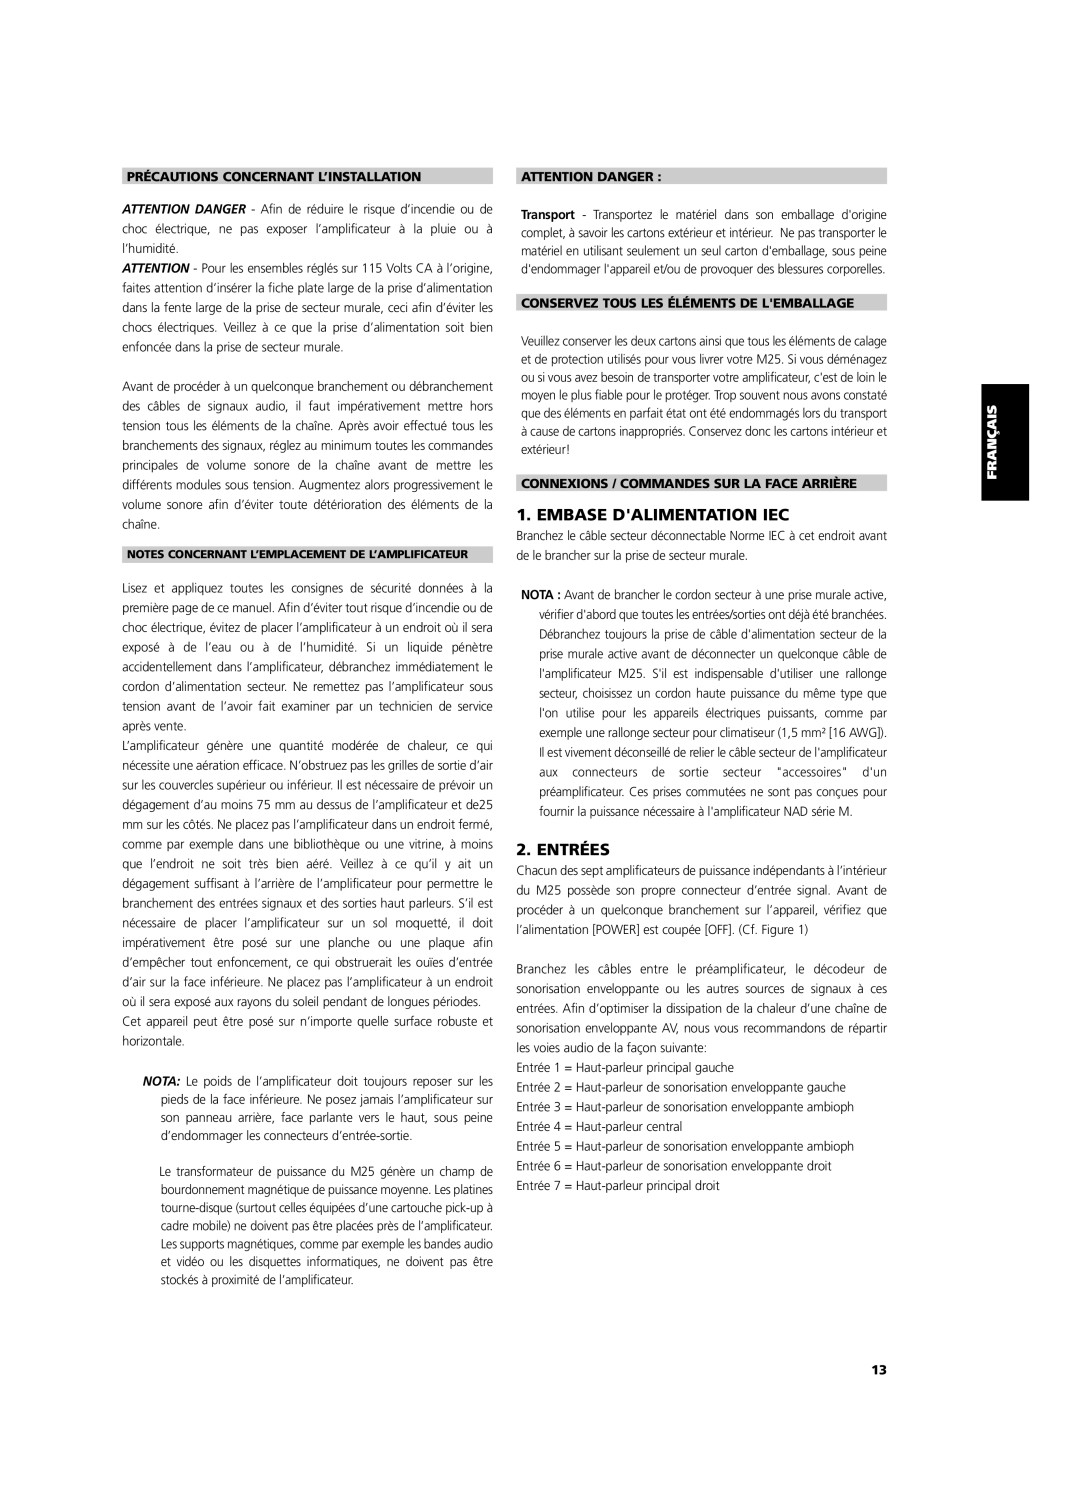 NAD M25 owner manual Embase Dalimentation Iec, Entrées, Précautions Concernant L’Installation, Attention Danger 